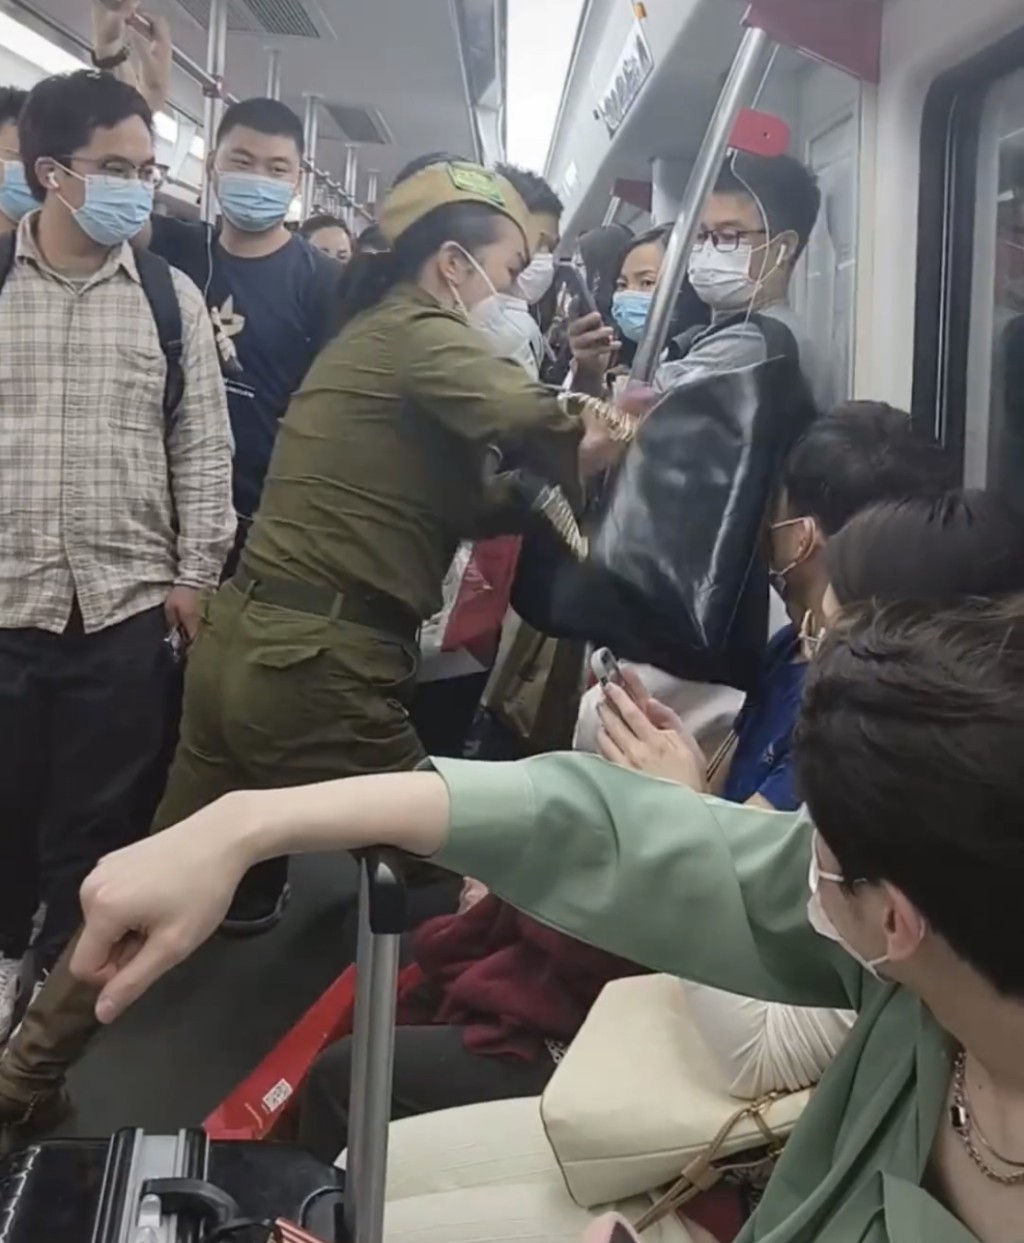 女子將手袋拍向男乘客頭部。